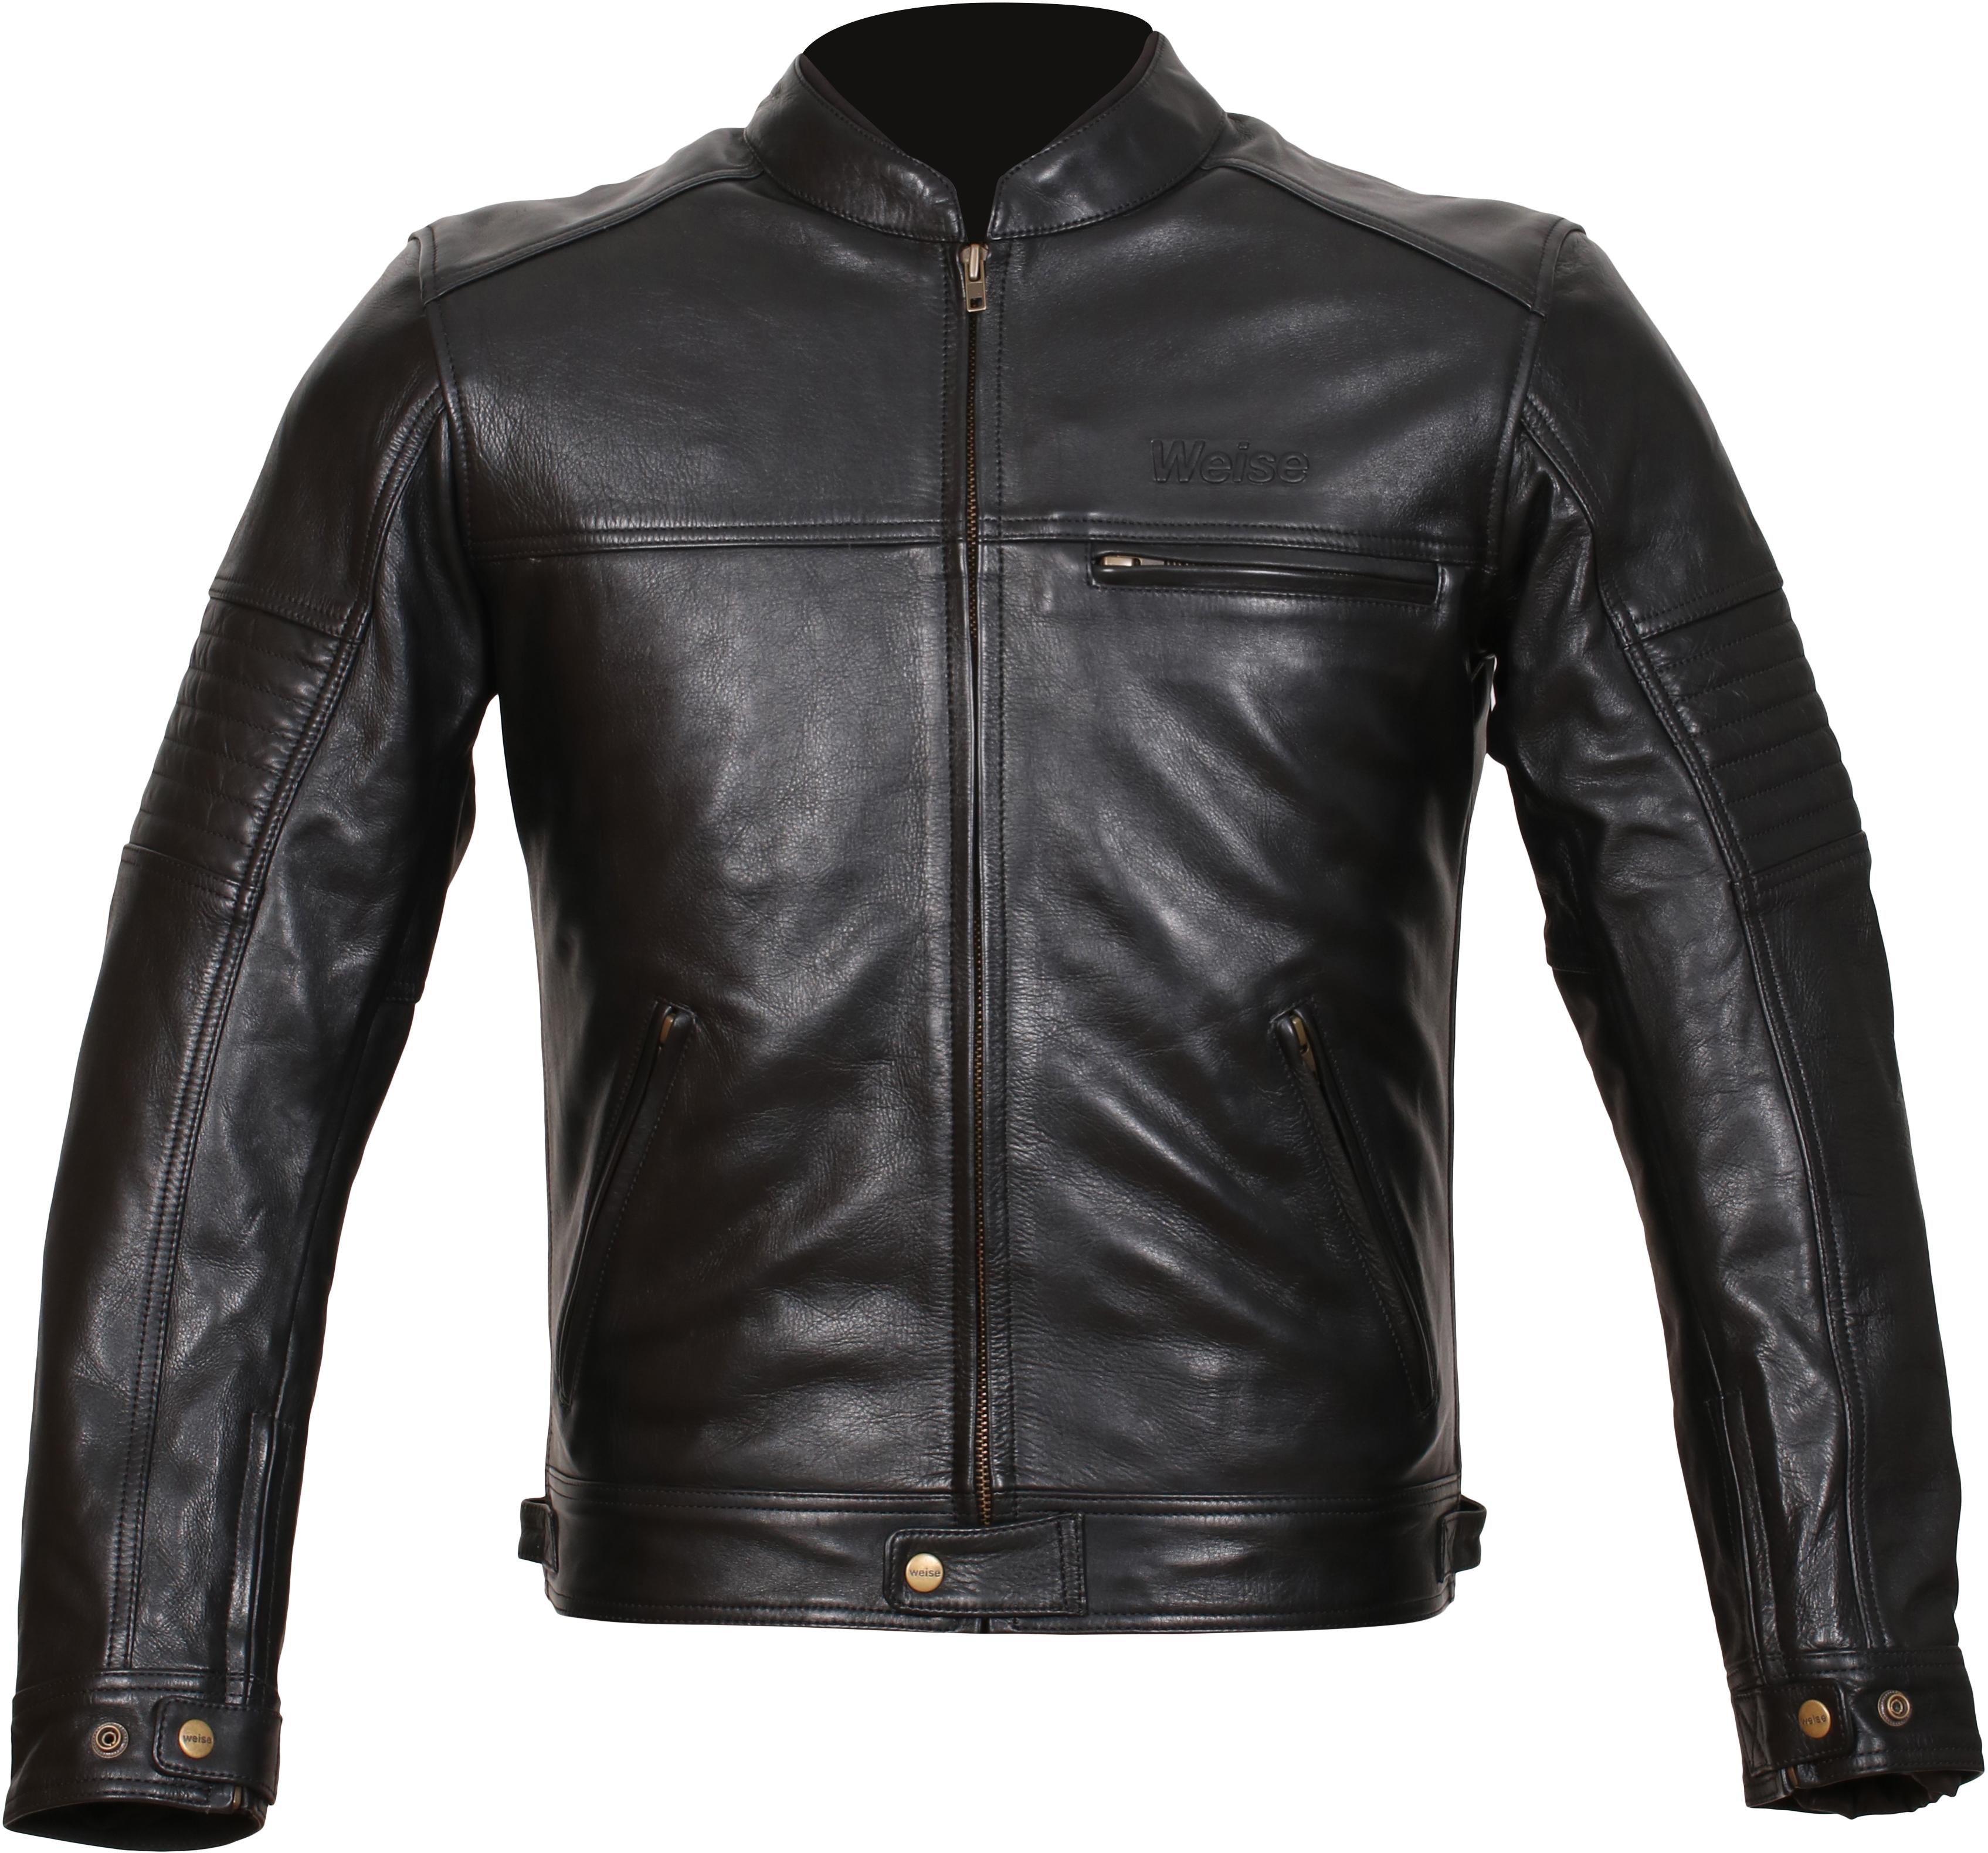 Weise Cabot Leather Motorcycle Jacket - Black, 40